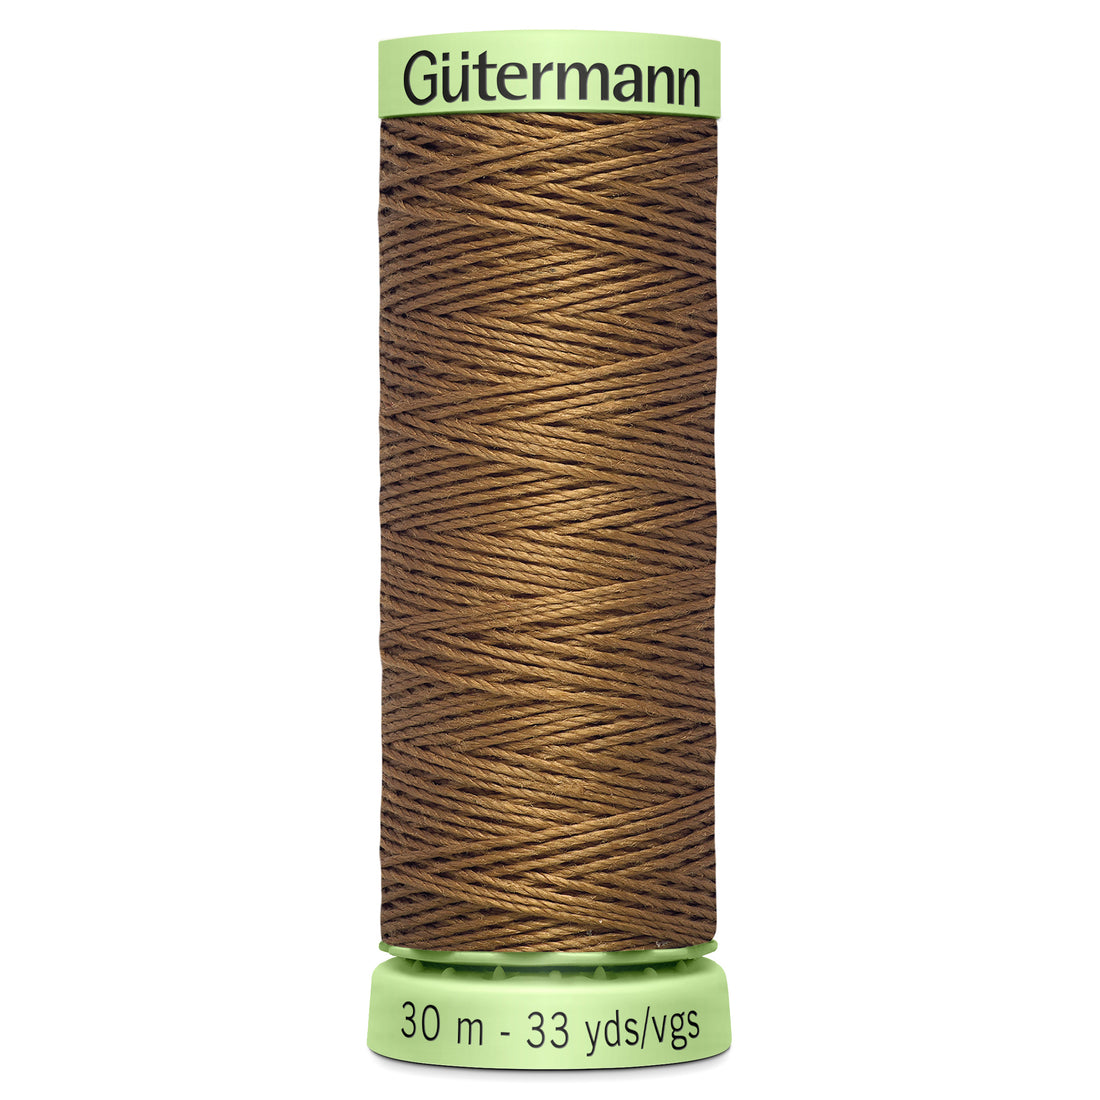 Gutermann Top Stitch Thread, 30m, Tan 124-Thread-Flying Bobbins Haberdashery